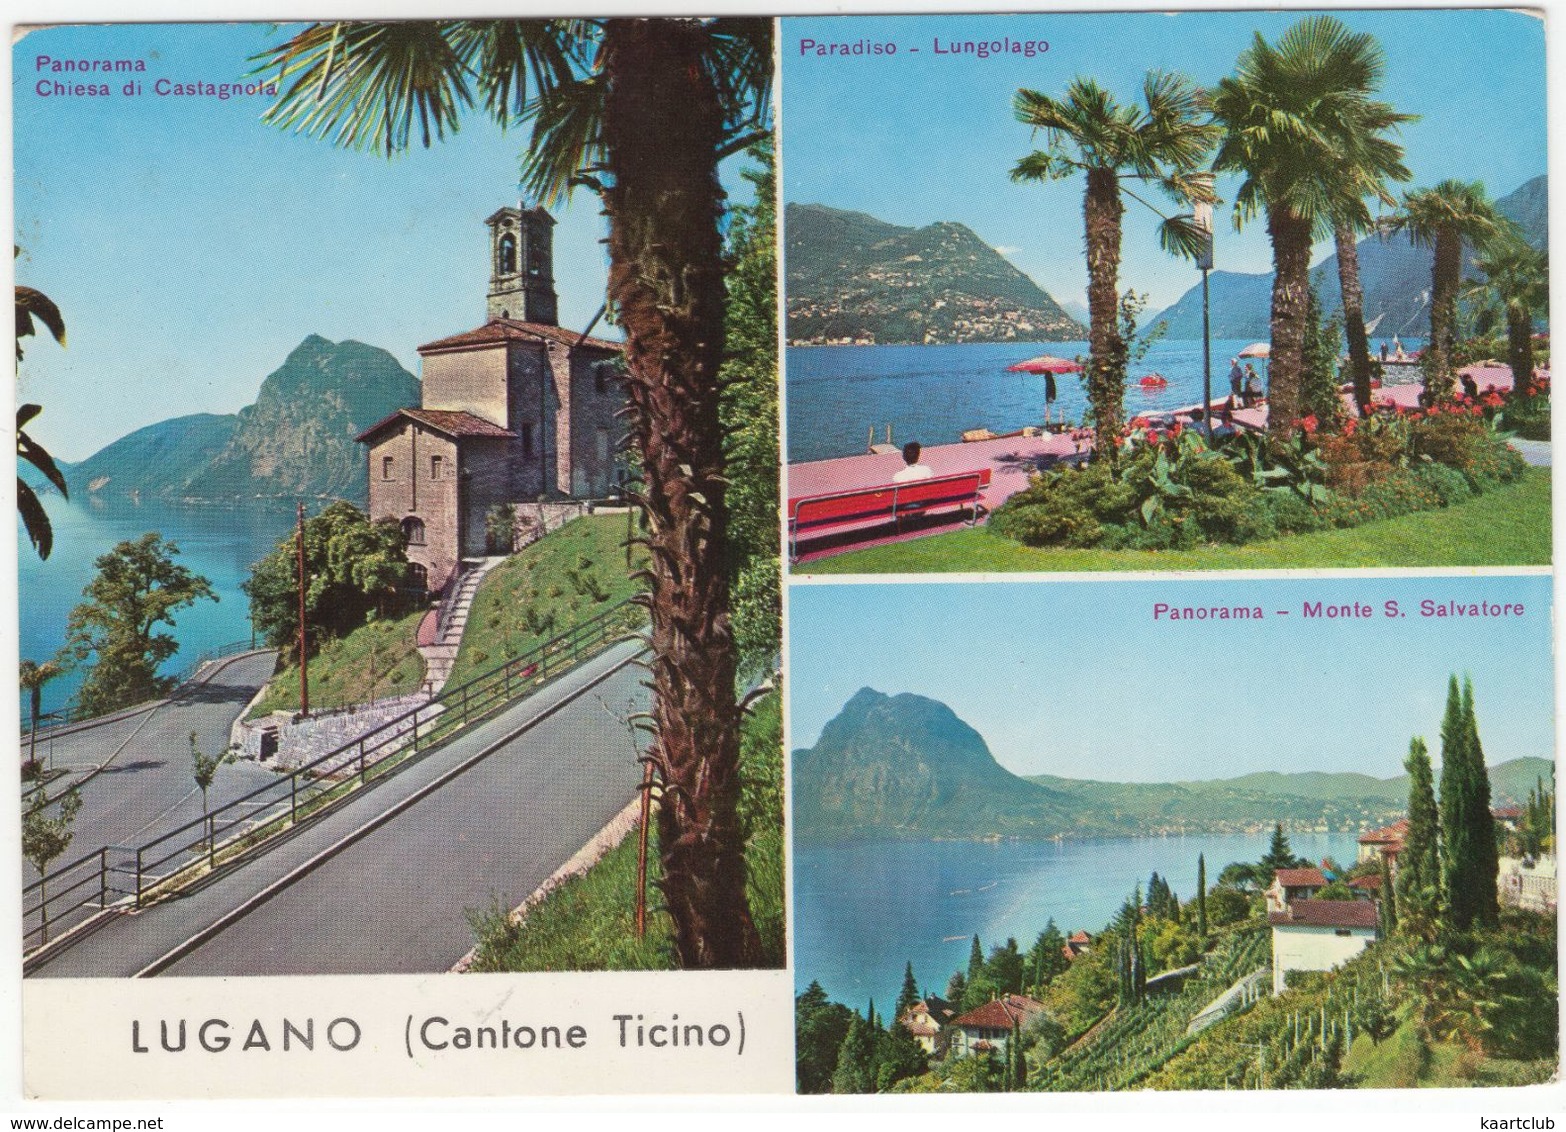 Lugano (Cantone Ticino) - Chiesa Di Castagnola, Paradiso Lungolago, Monte S. Salvatore - Paradiso